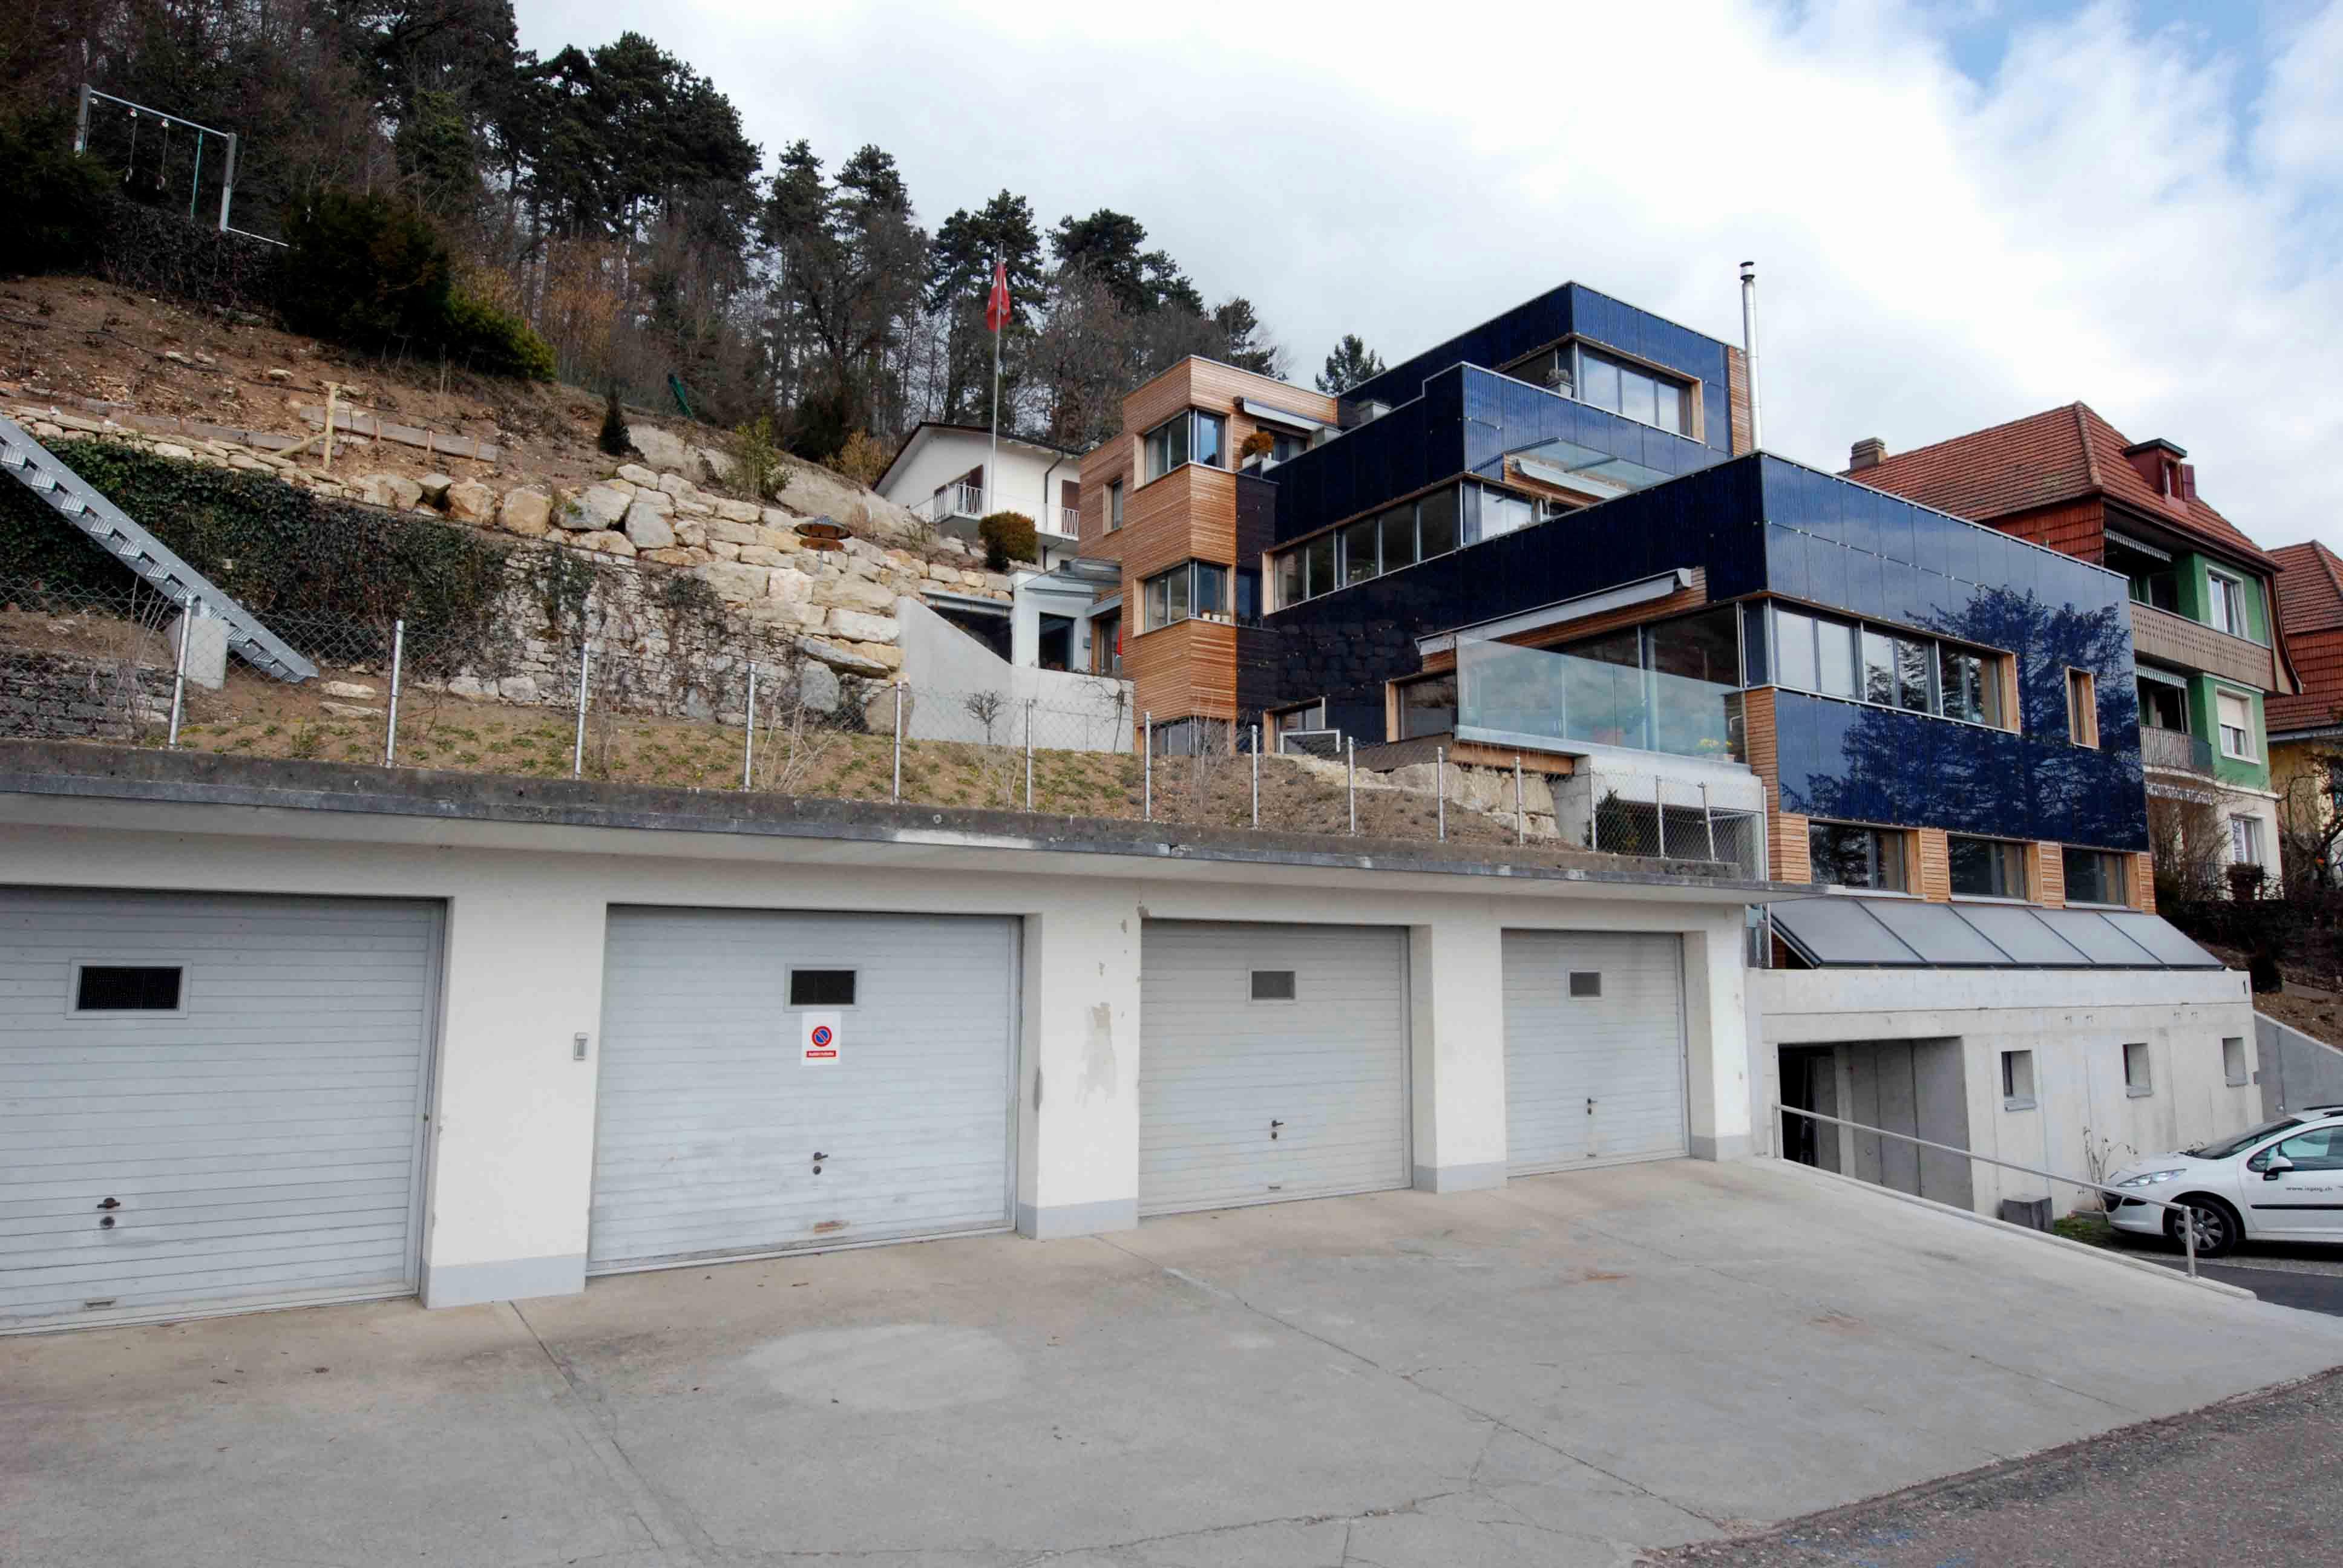 Architektur-Reportage Biel Solarfassade: das Haus ist in den Hügel gebaut